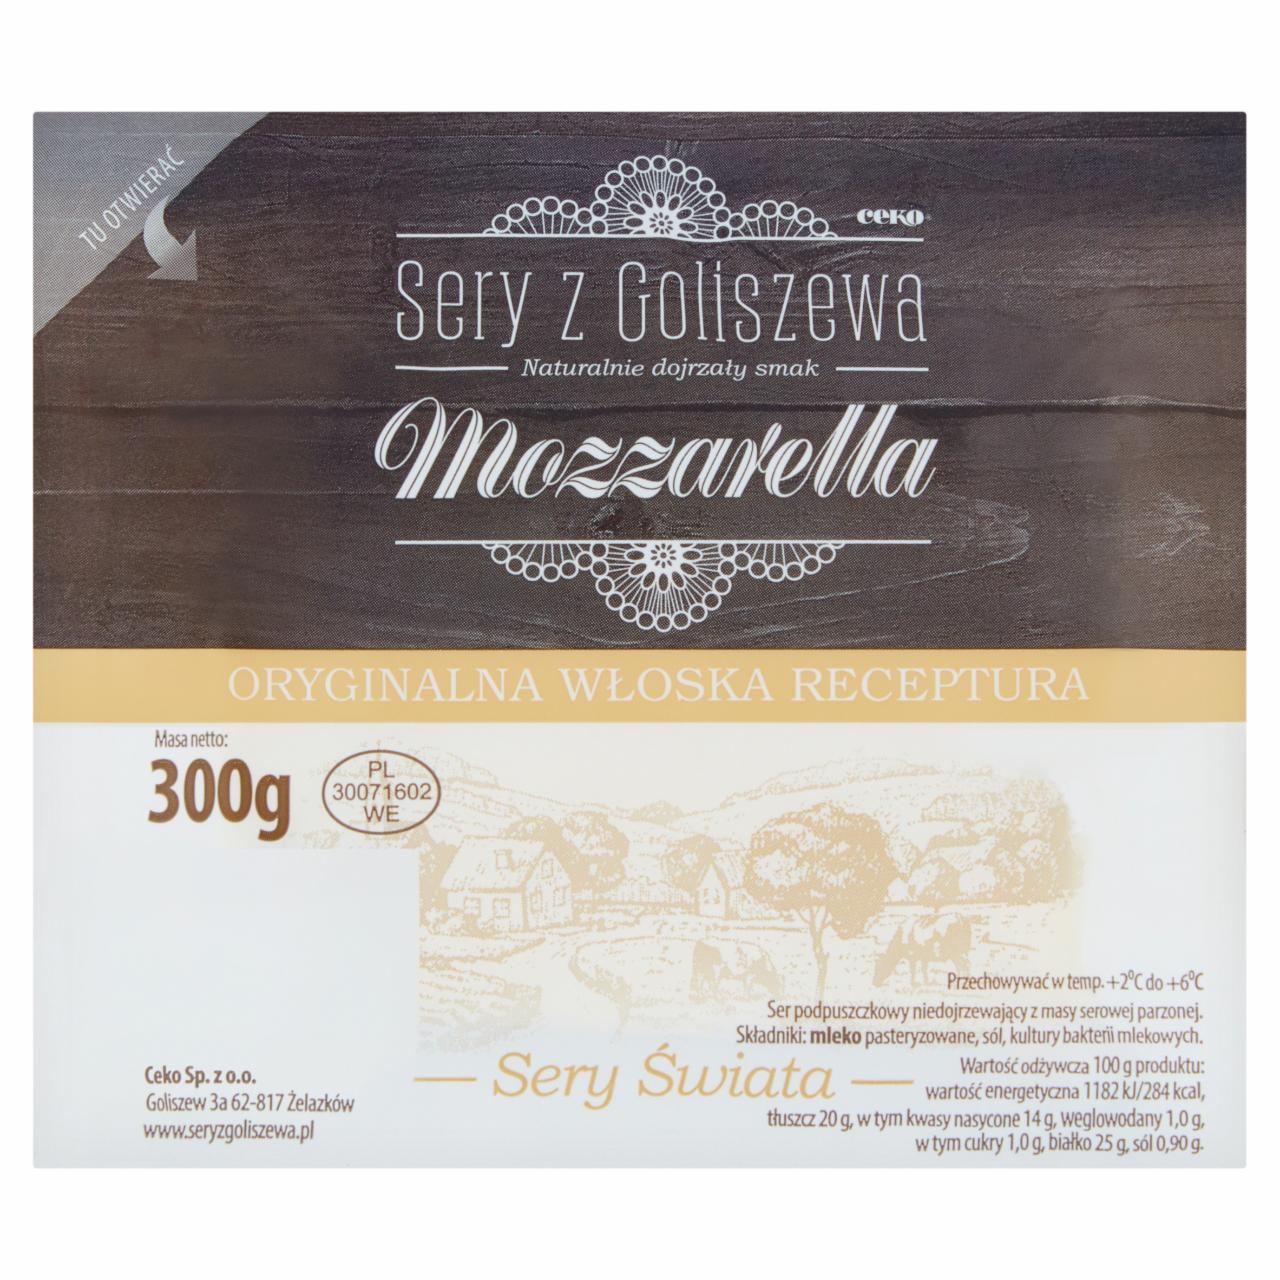 Photo - Sery z Goliszewa Mozzarella Cheese 135 g